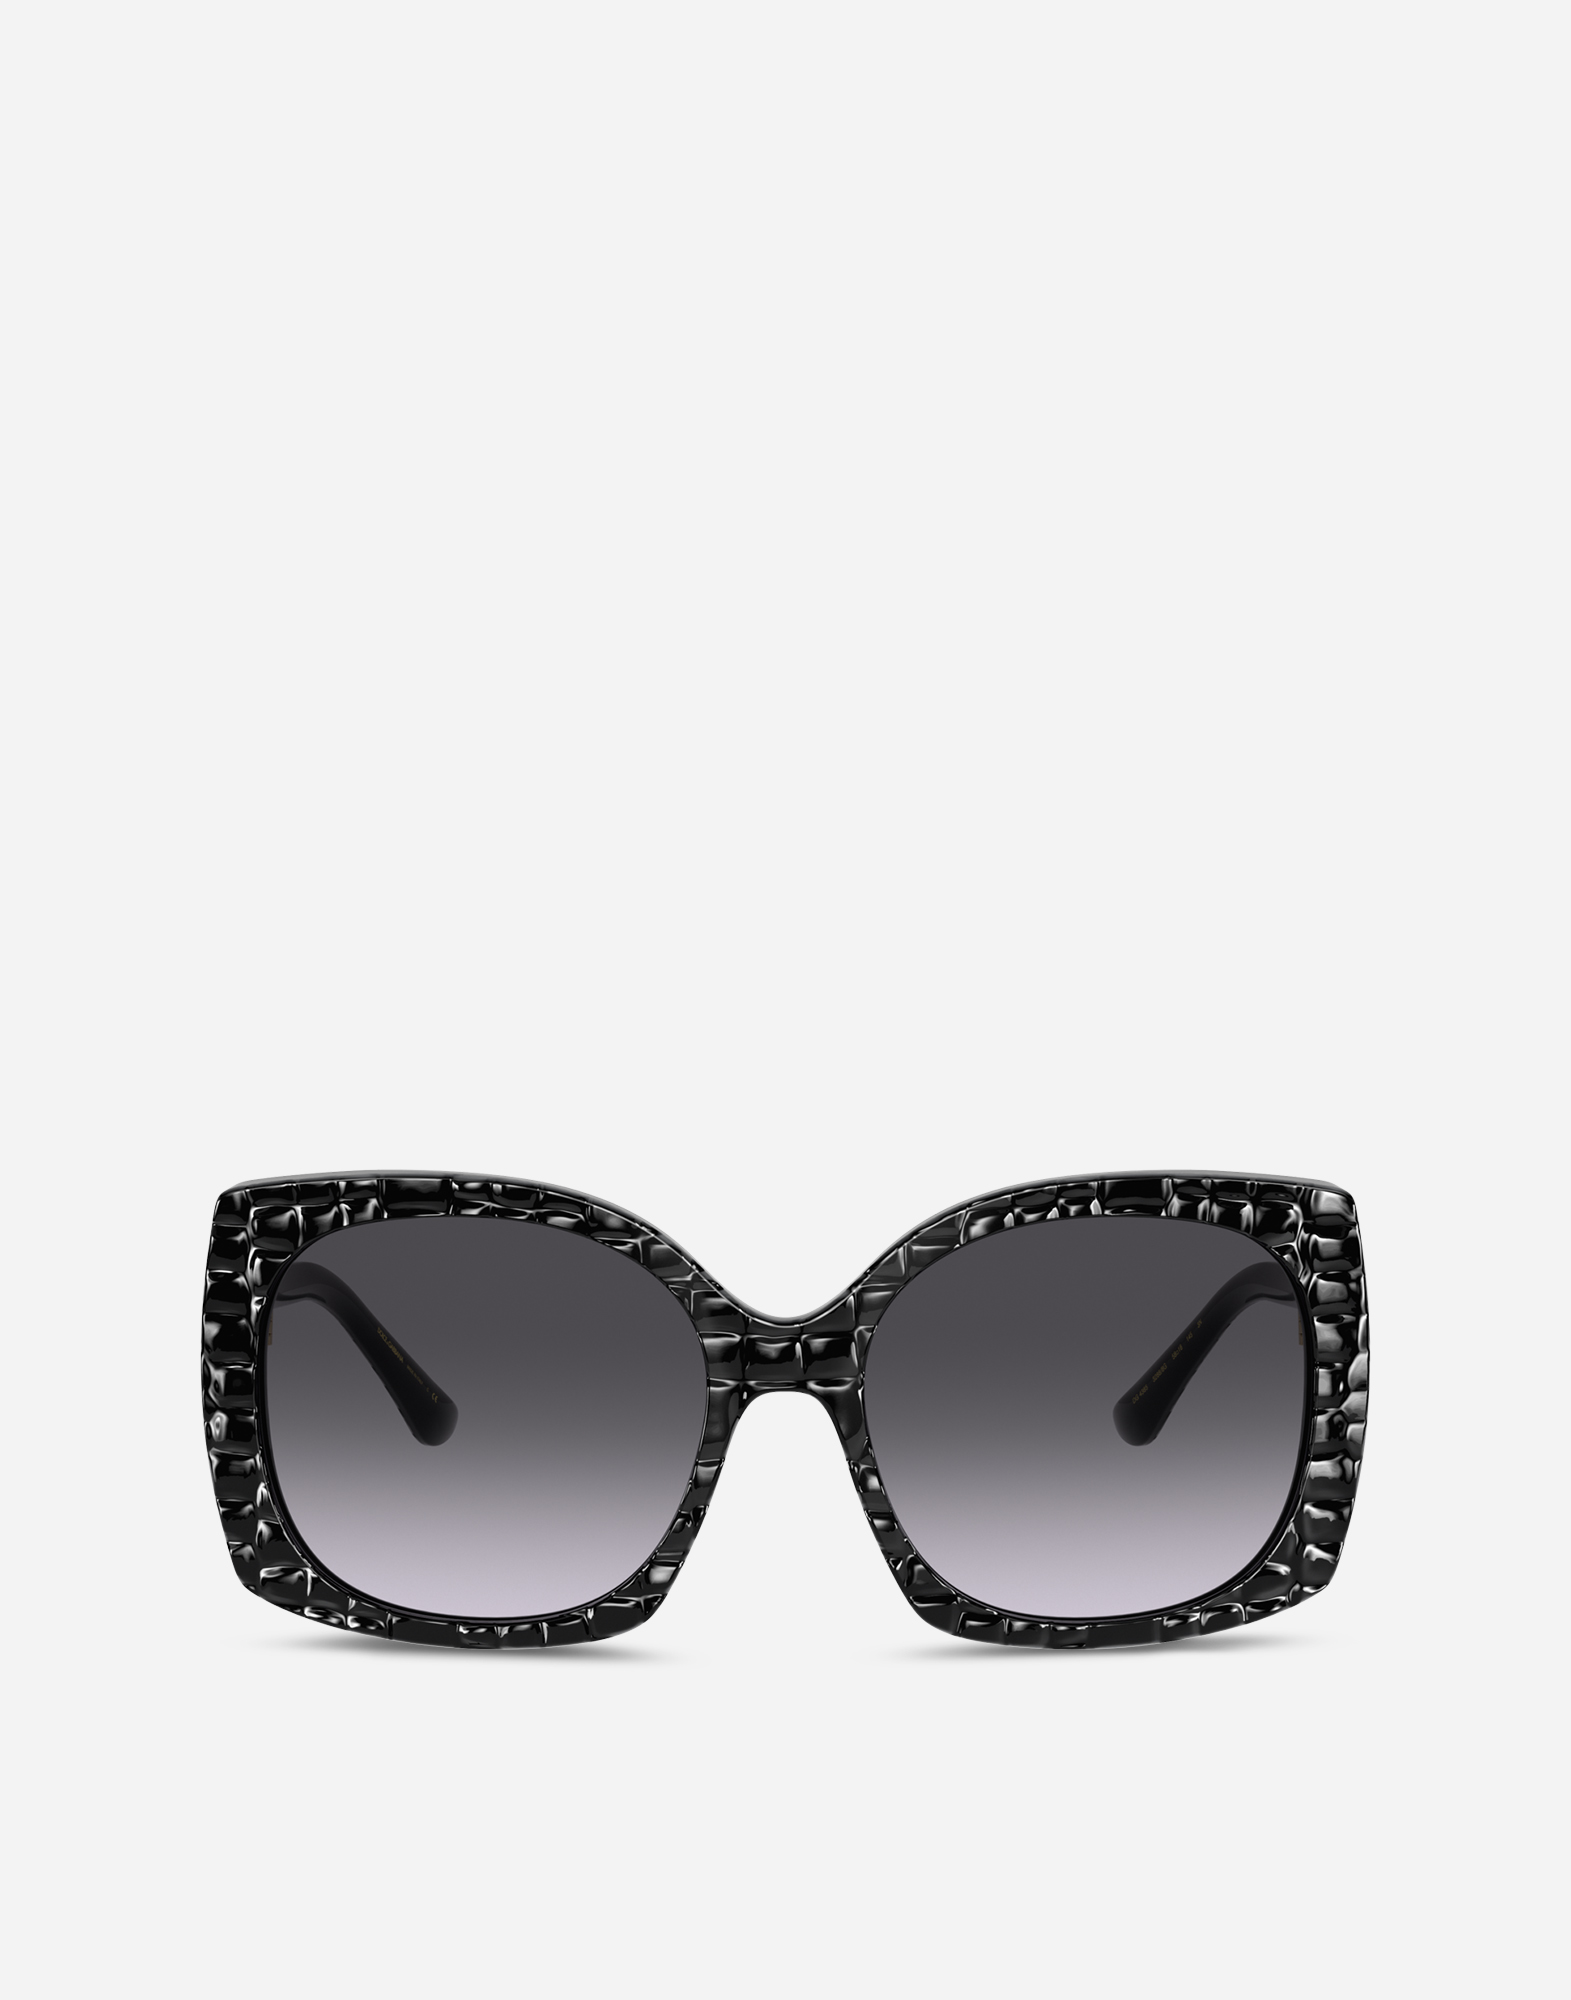 Print family sunglasses in Black Crocodile Effect